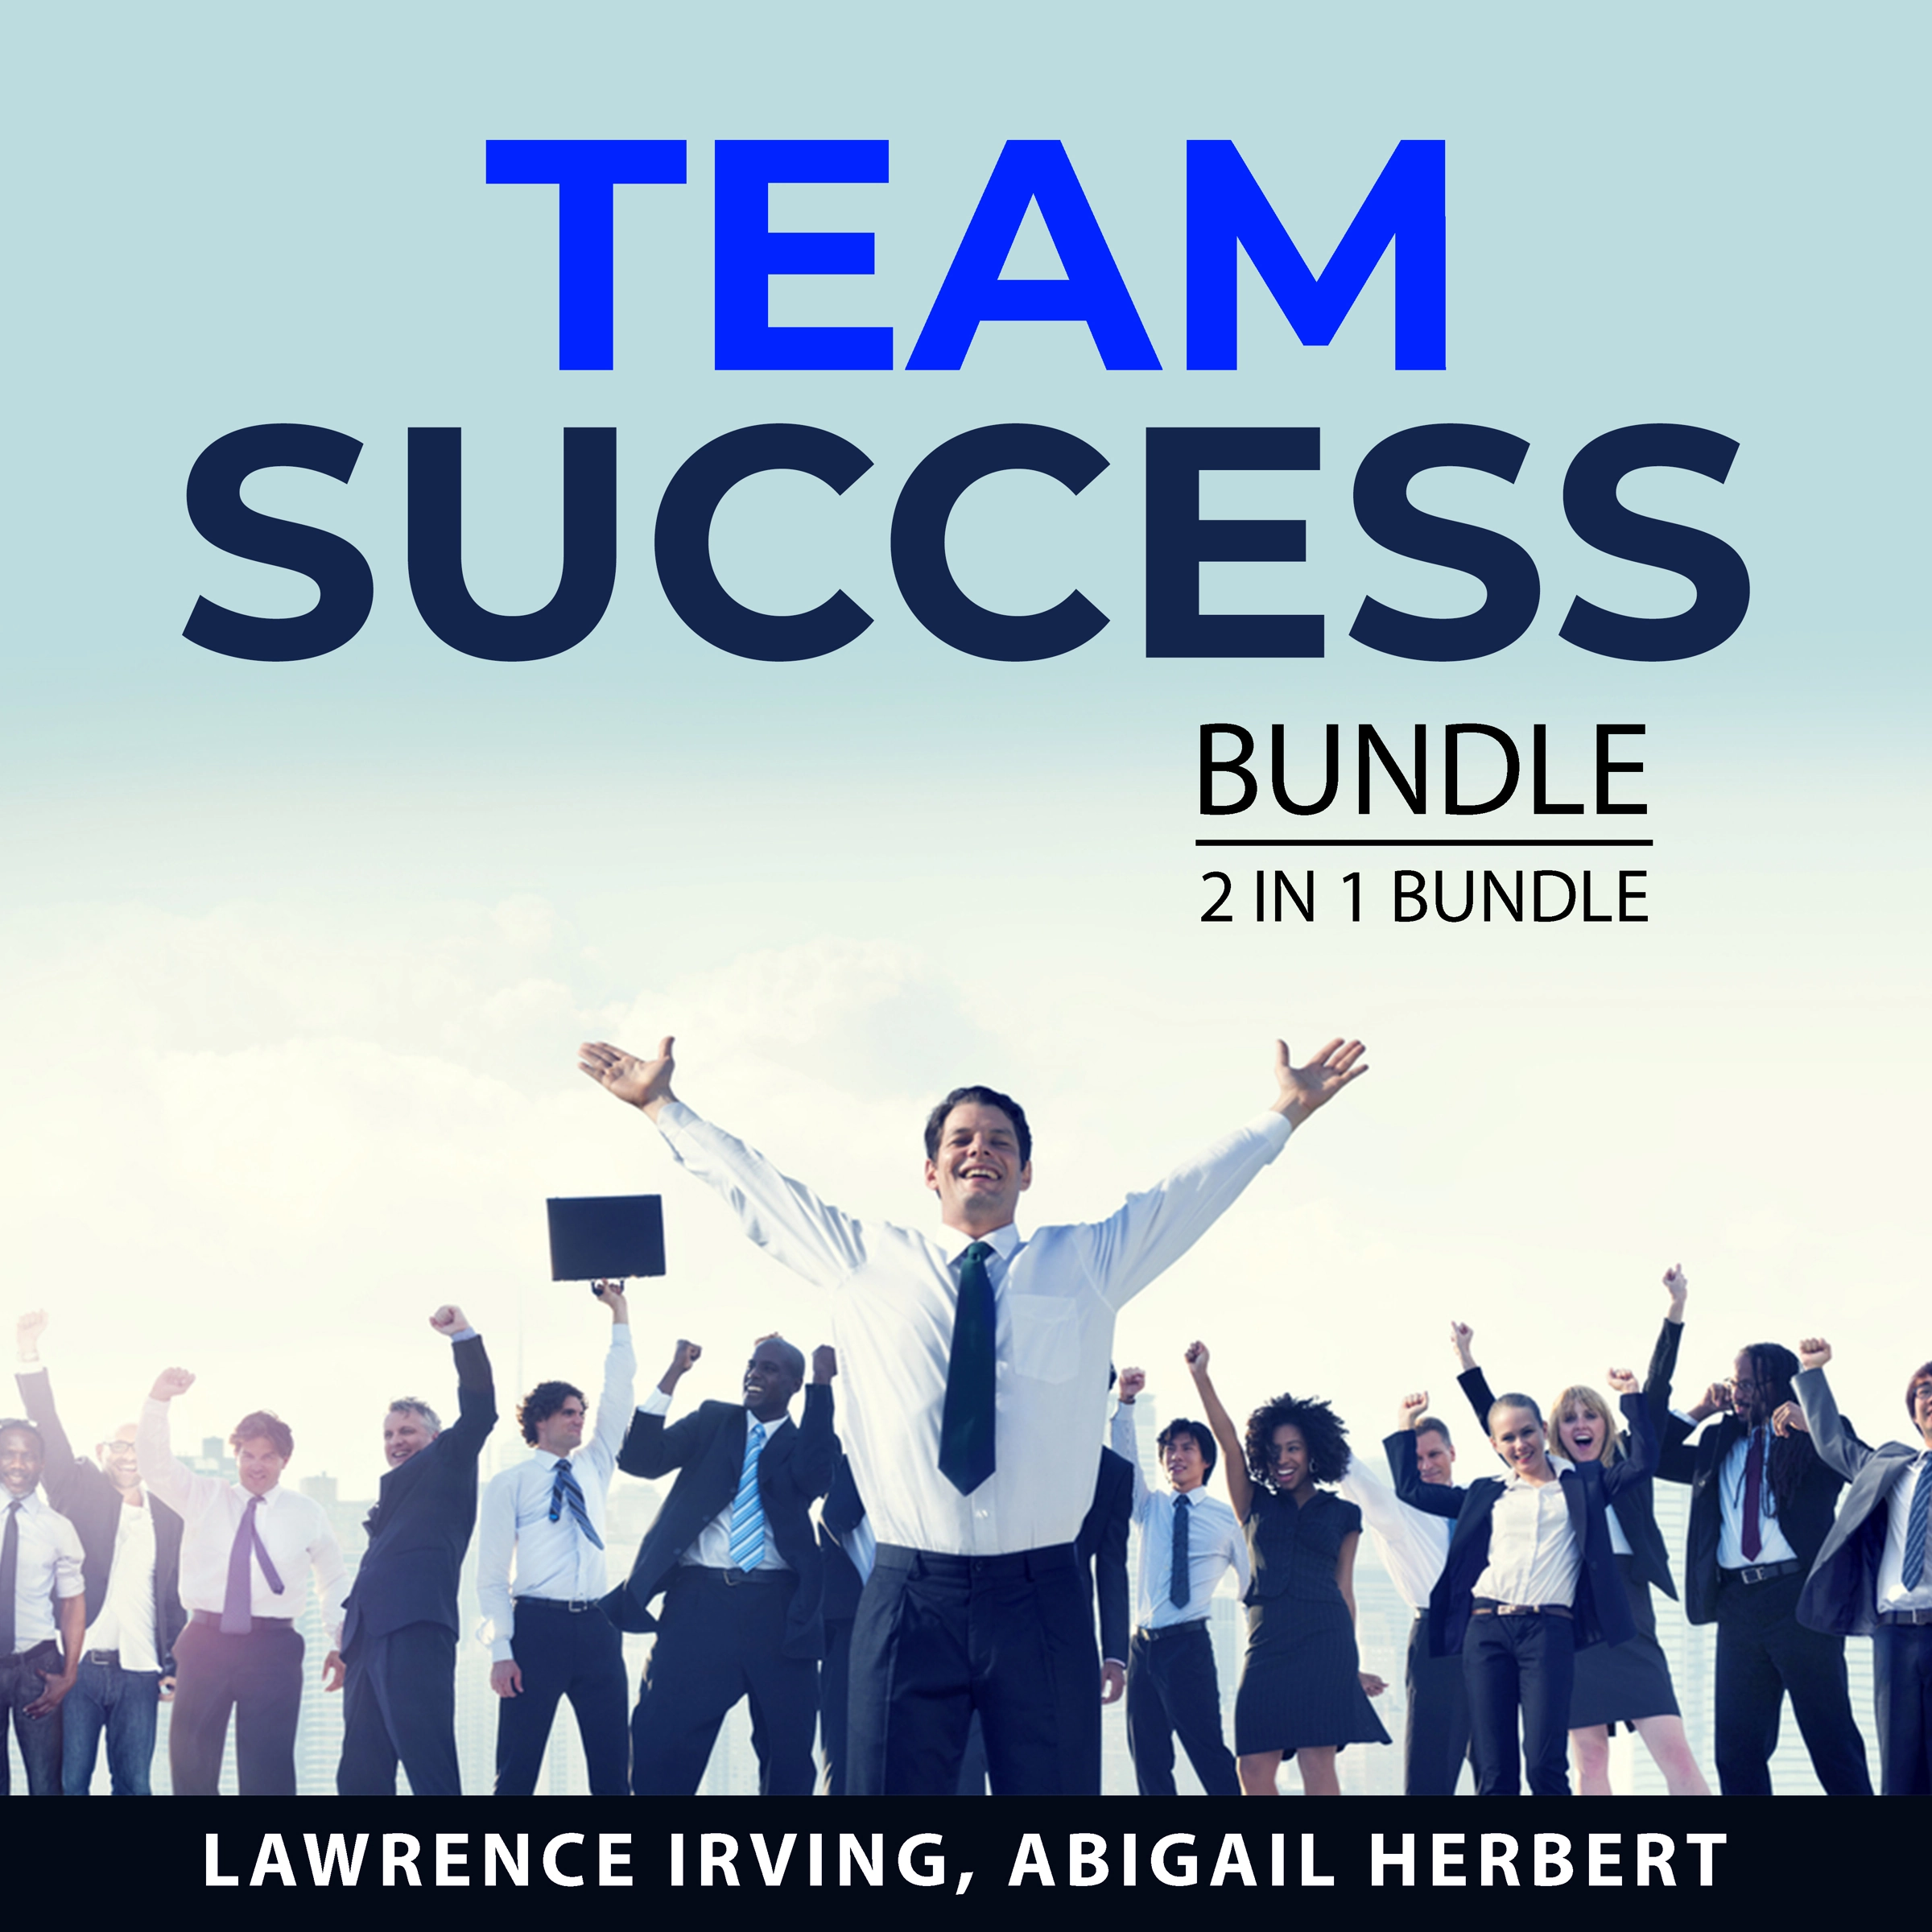 Team Success Bundle, 2 in 1 Bundle Audiobook by Abigail Herbert